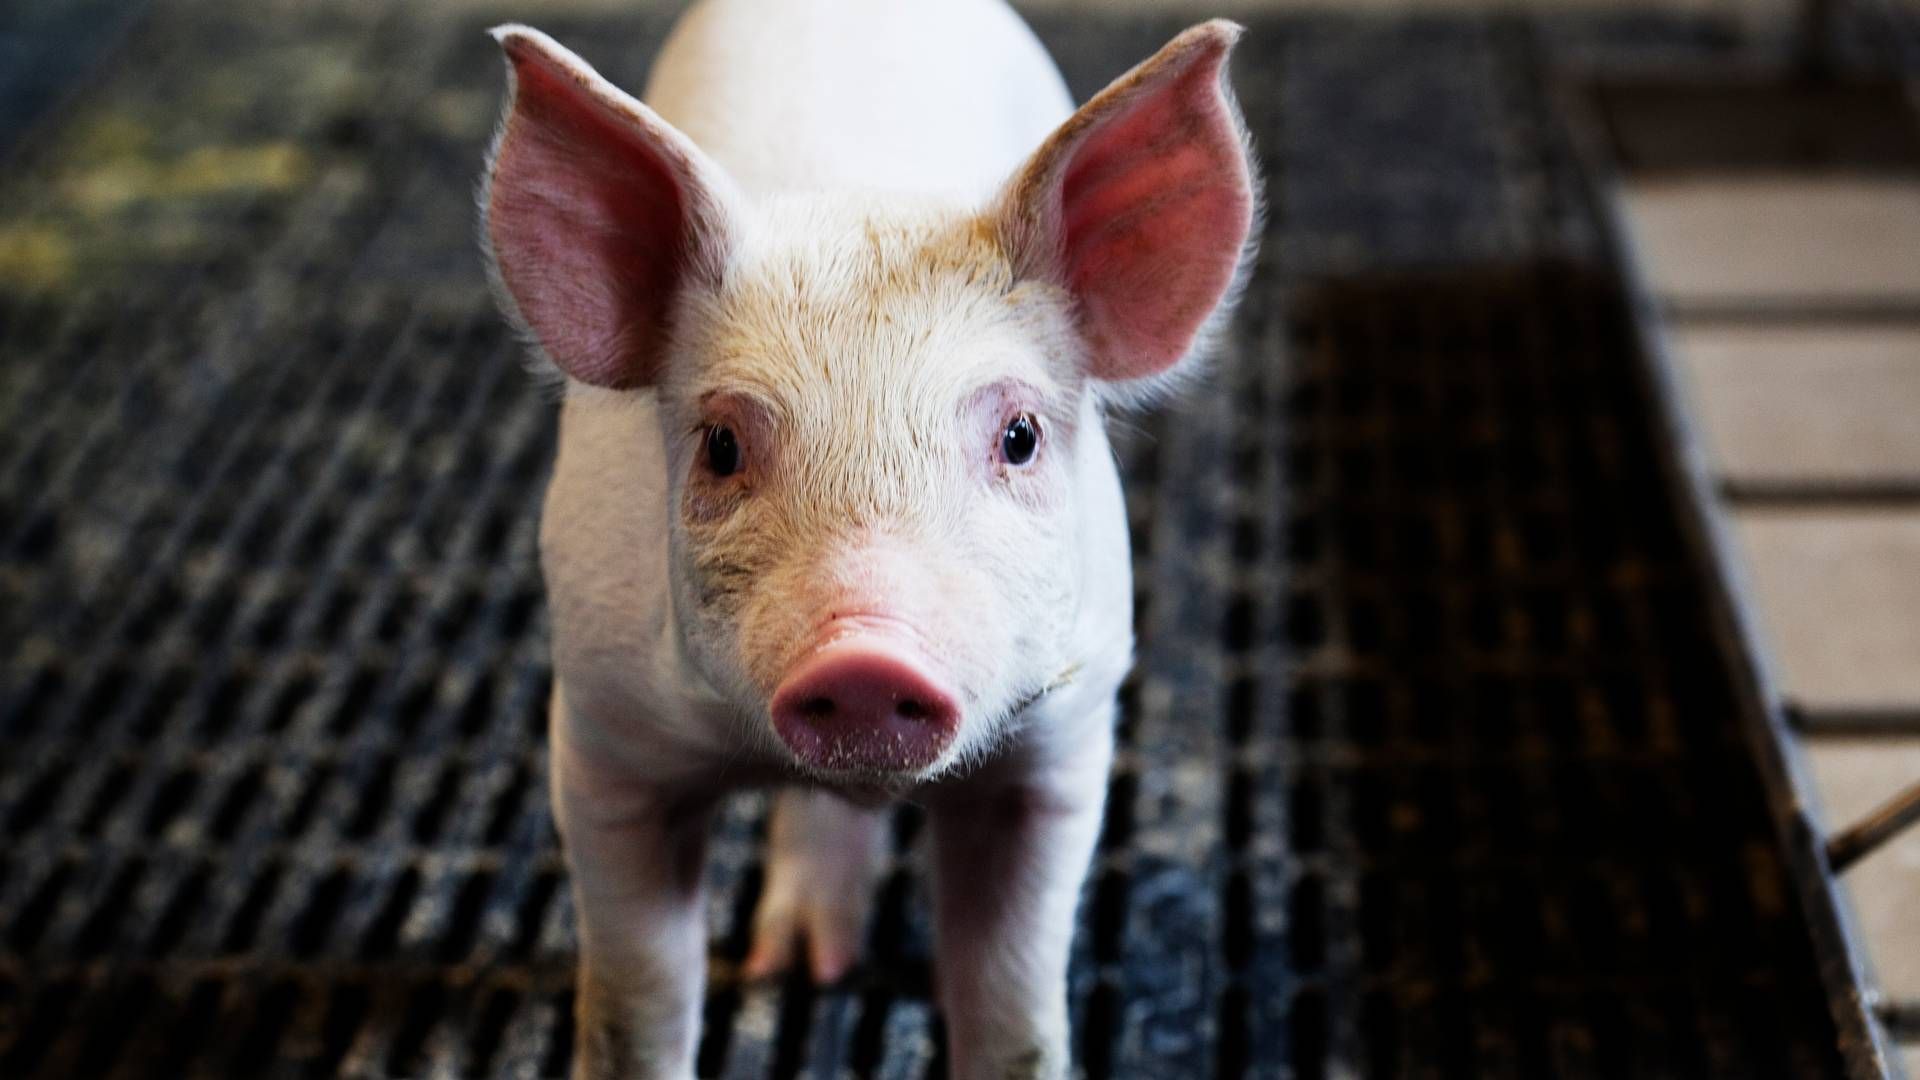 Det seneste år har flere kinesiske svineproducenter set prisen på svin falde grundet øget svineproduktion. | Foto: Landbrug&fødevarer / Pr